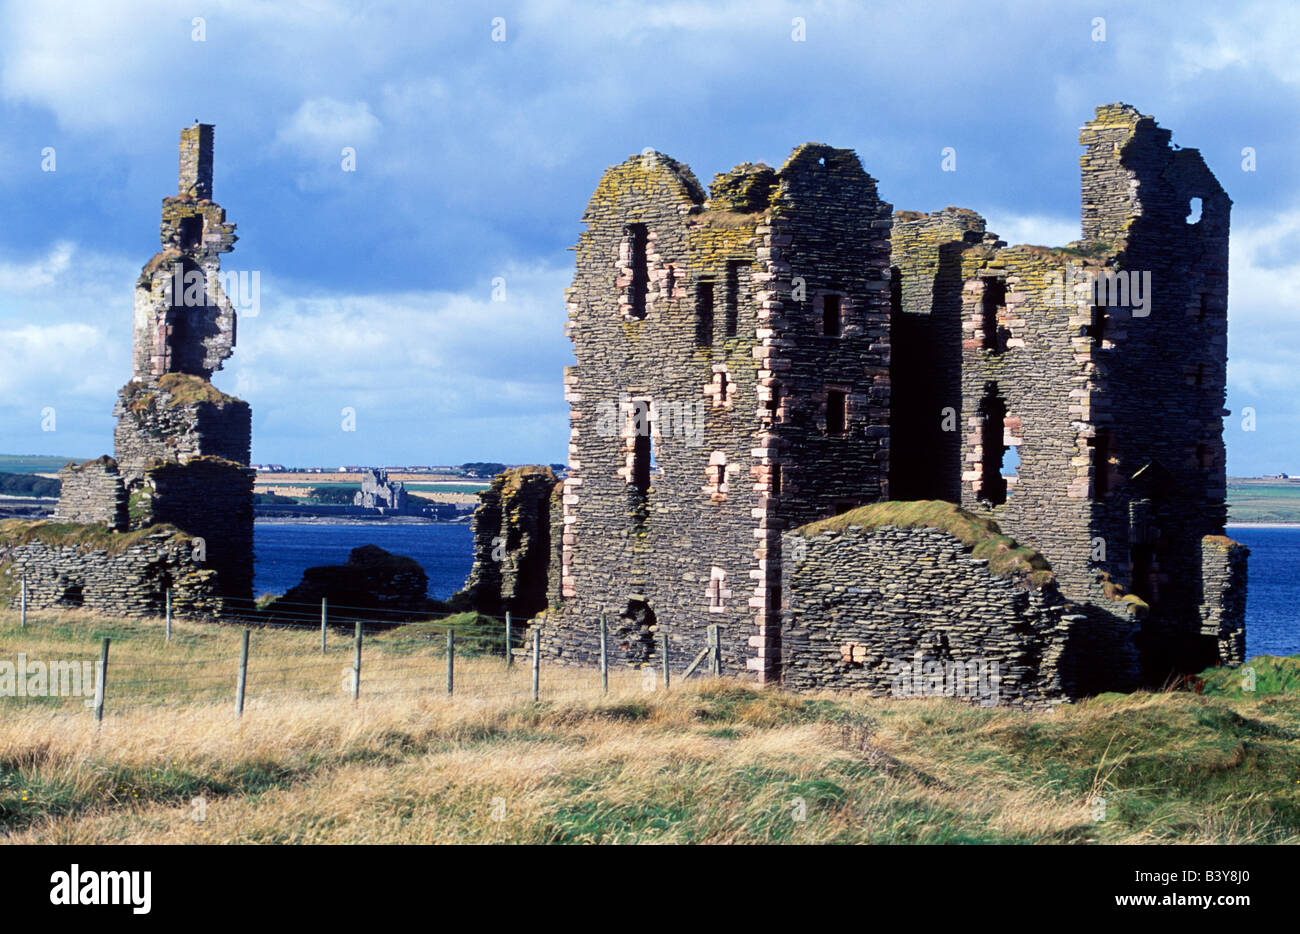 L'Écosse, Caithness. Les ruines du château de Château Sinclair Girnigoe et regarder de l'autre côté de la baie de Sinclair. Datant du quinzième et dix-septième siècles, ils étaient une fois la place forte pour les comtes de Caithness Banque D'Images